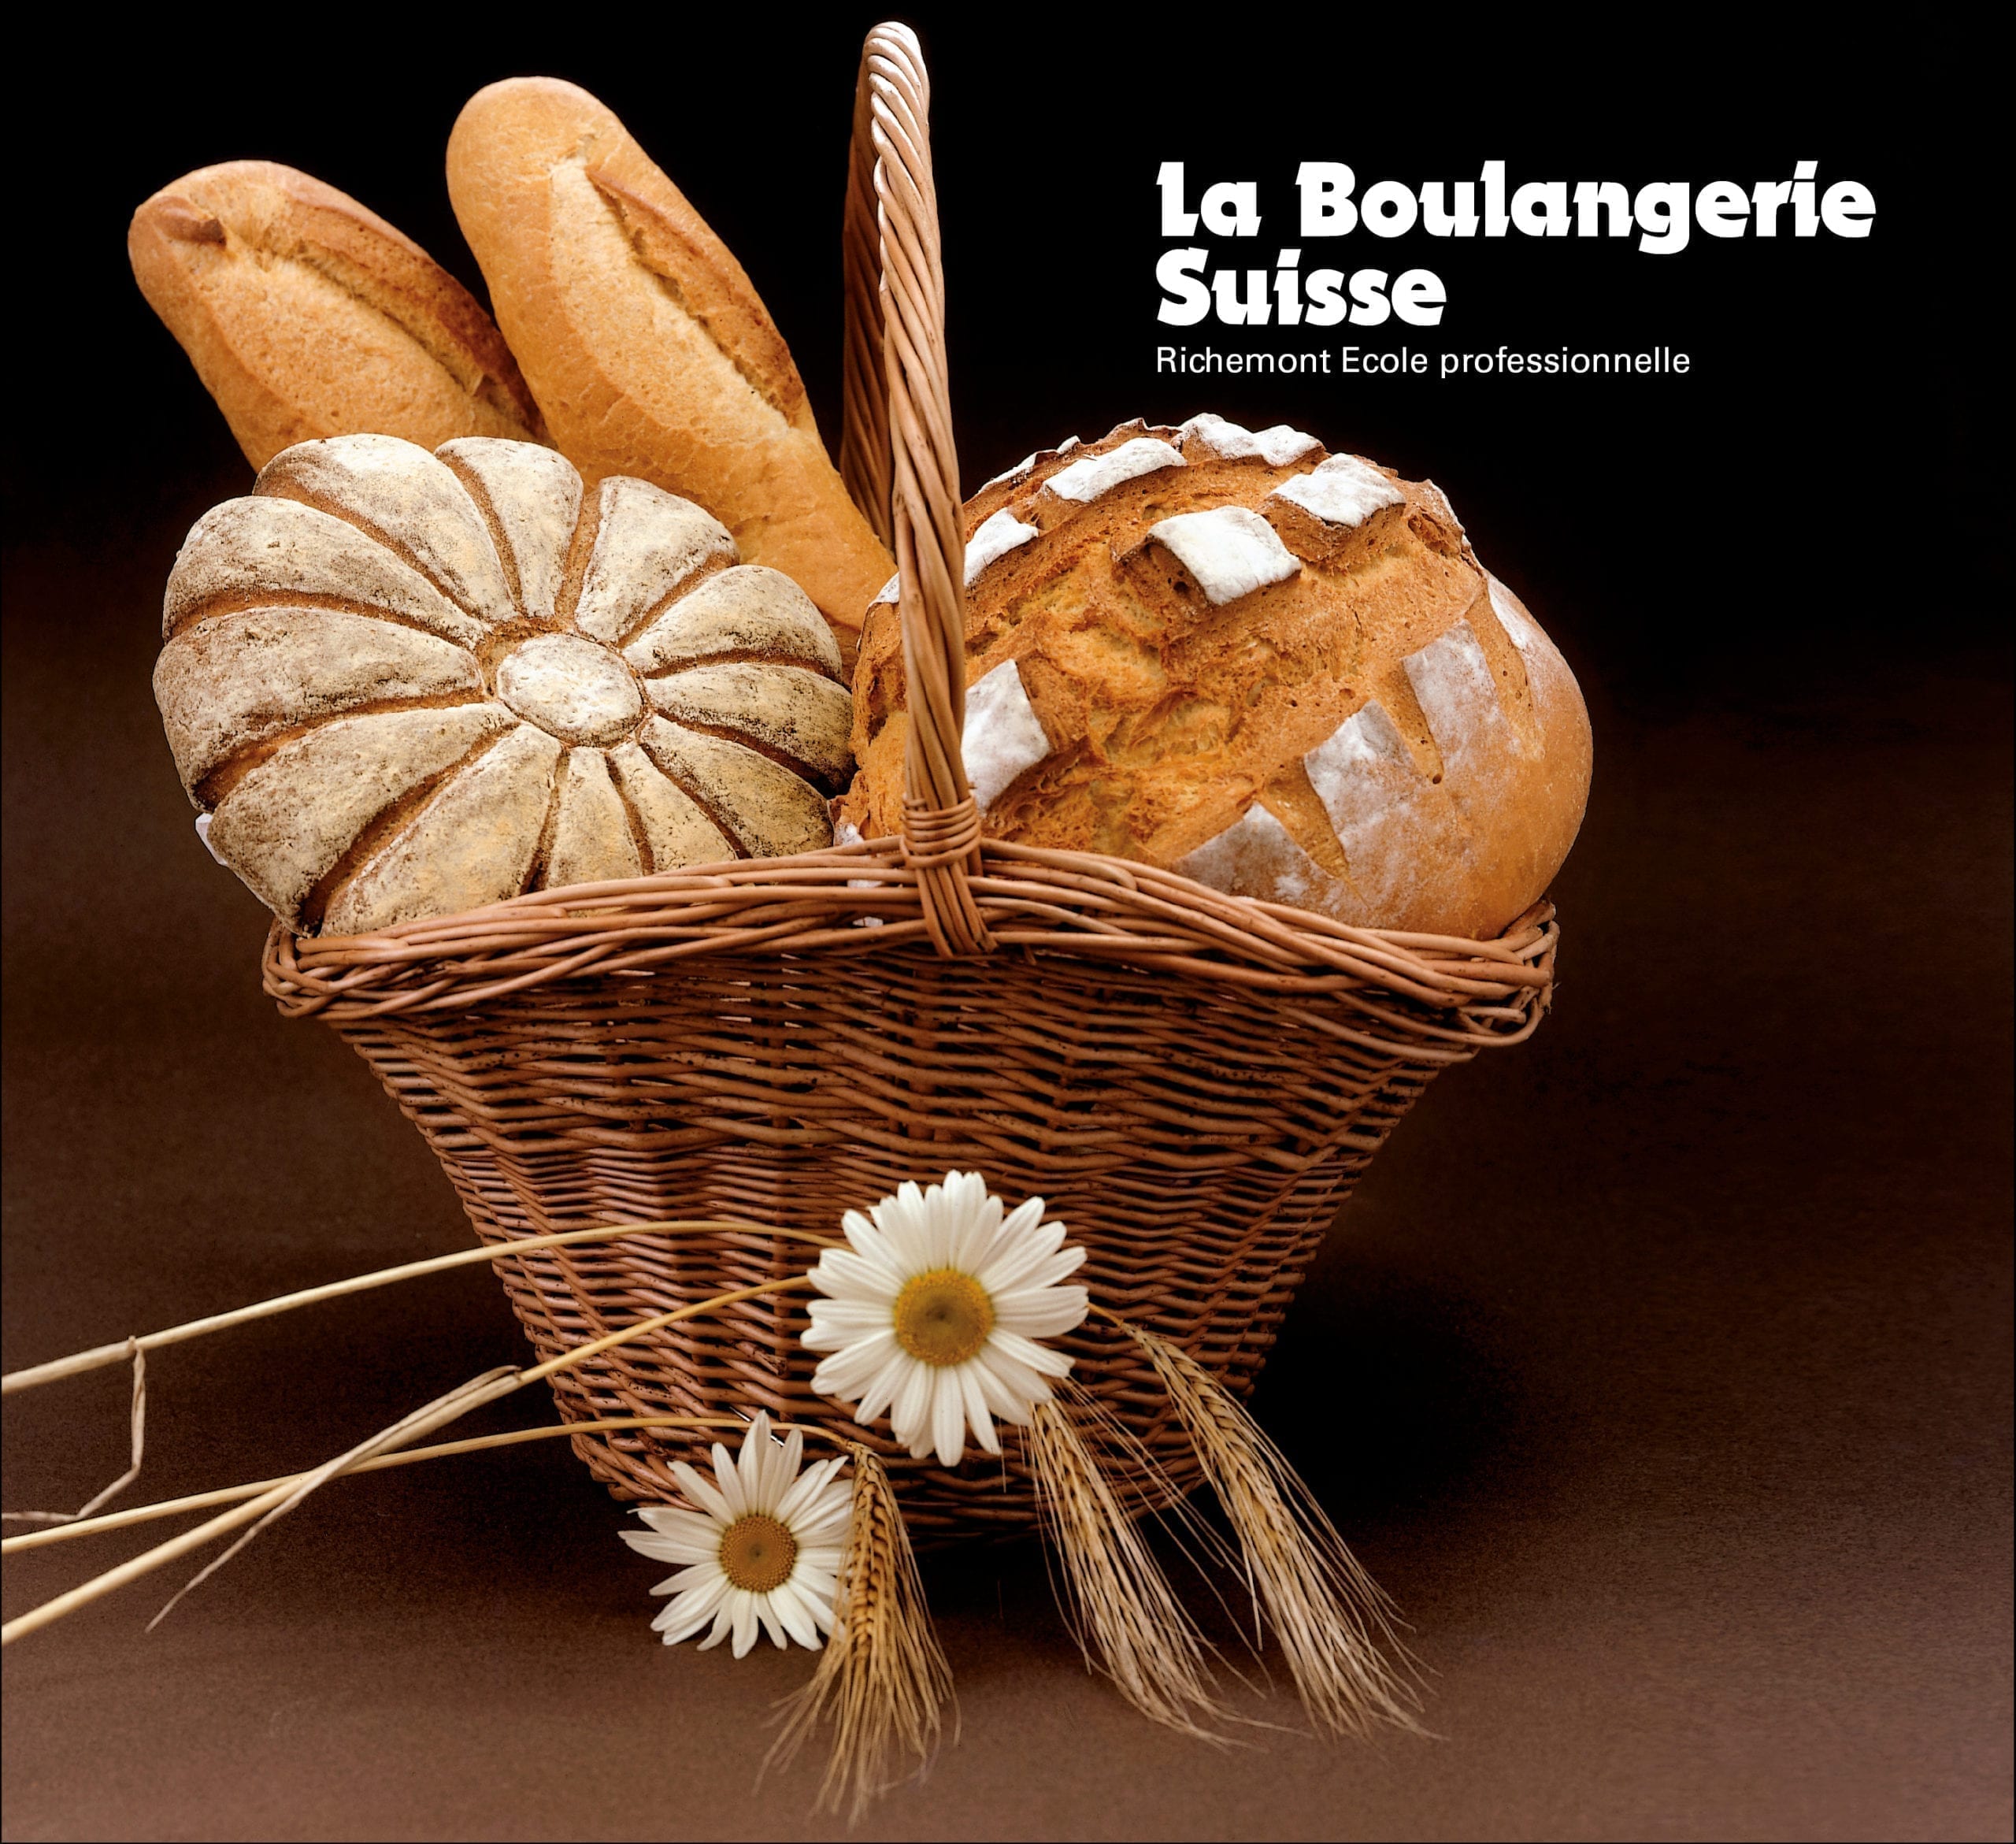 La Suisse de parade … - Page 3 La_boulangerie_suisse